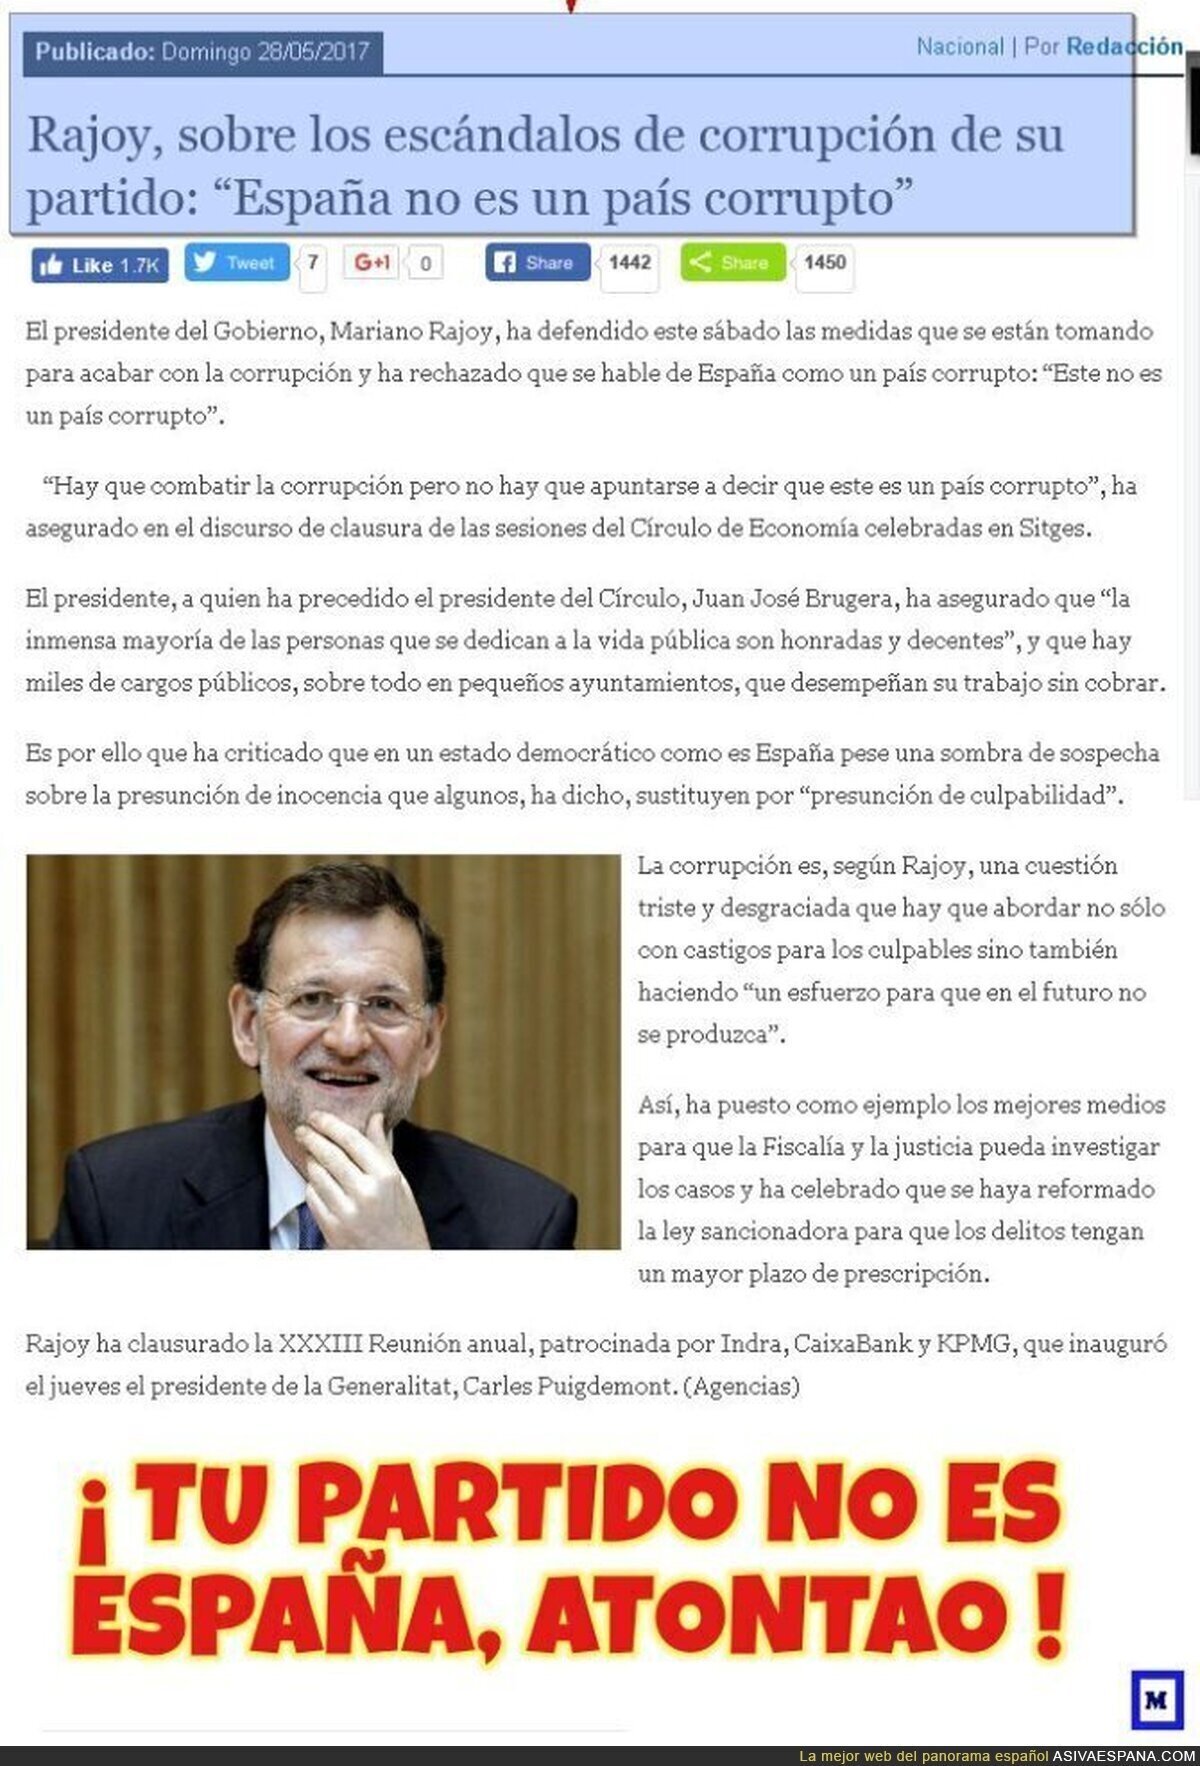 Rajoy "confunde" España con su partido.